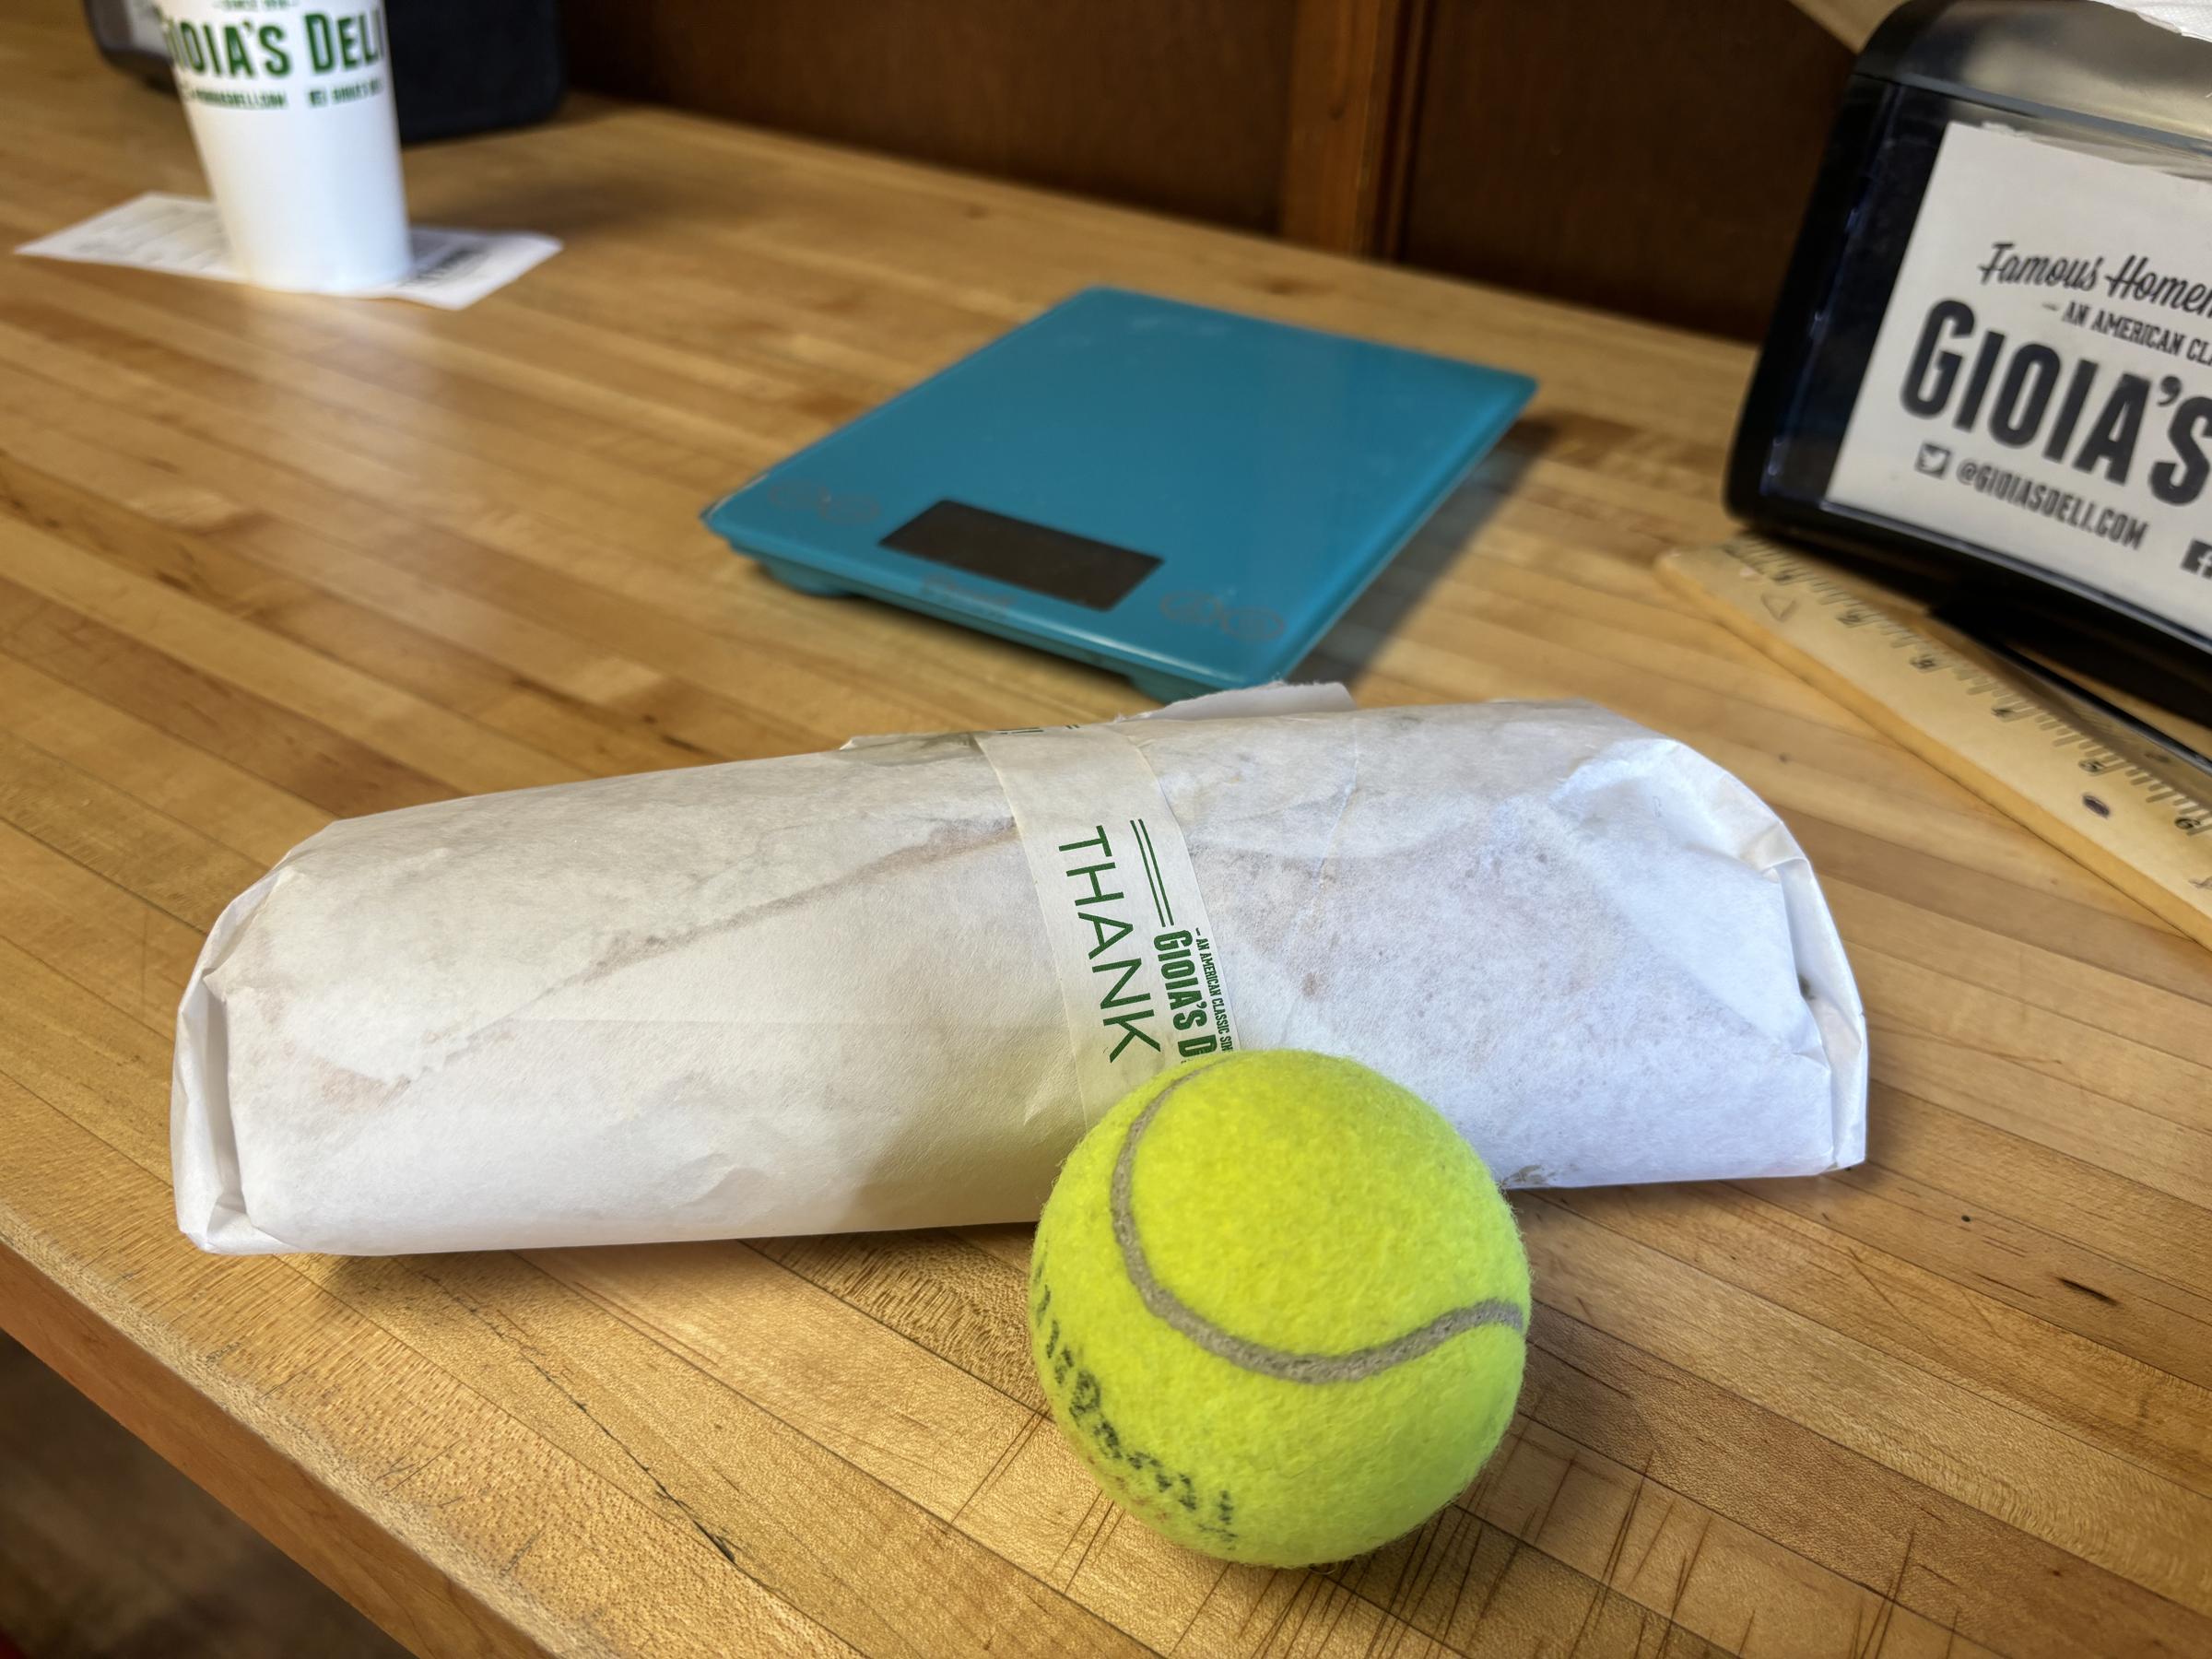 Gioia's Deli sandwich vs tennis ball size